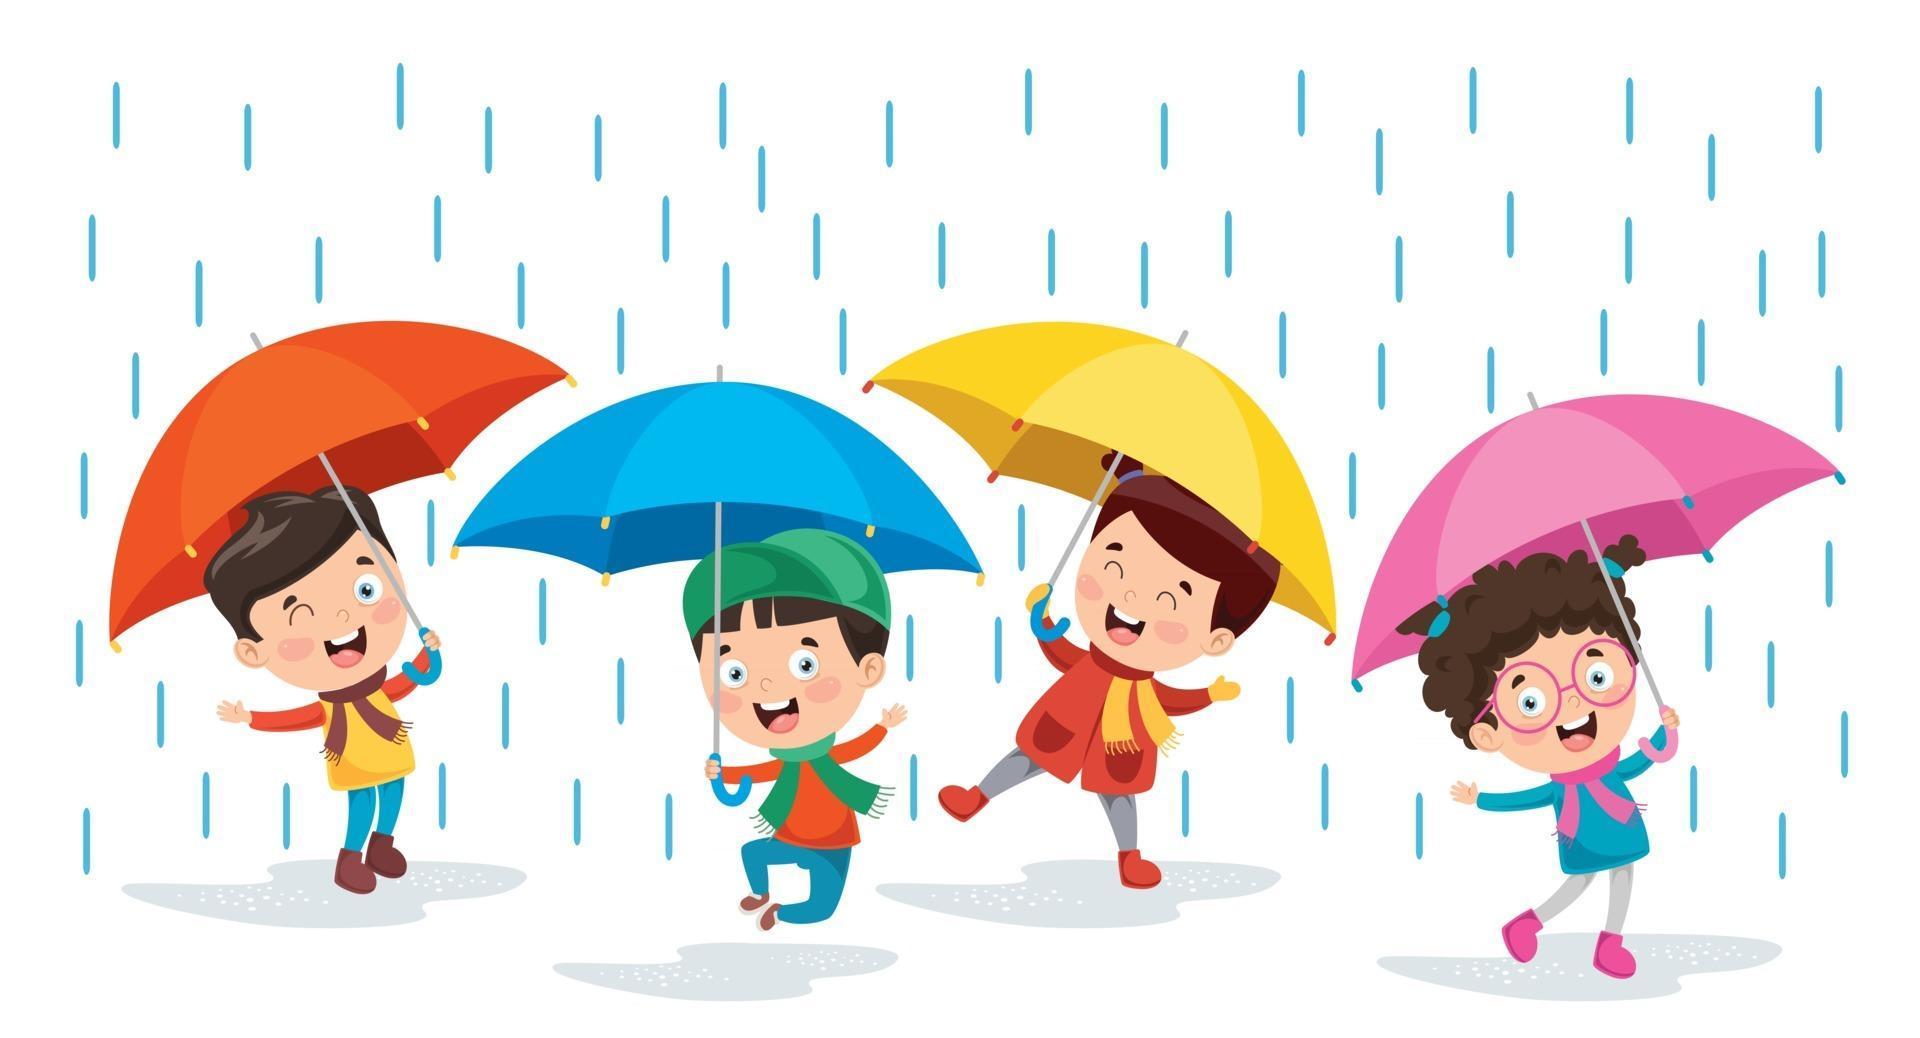 children-using-umbrella-under-the-rain-vector